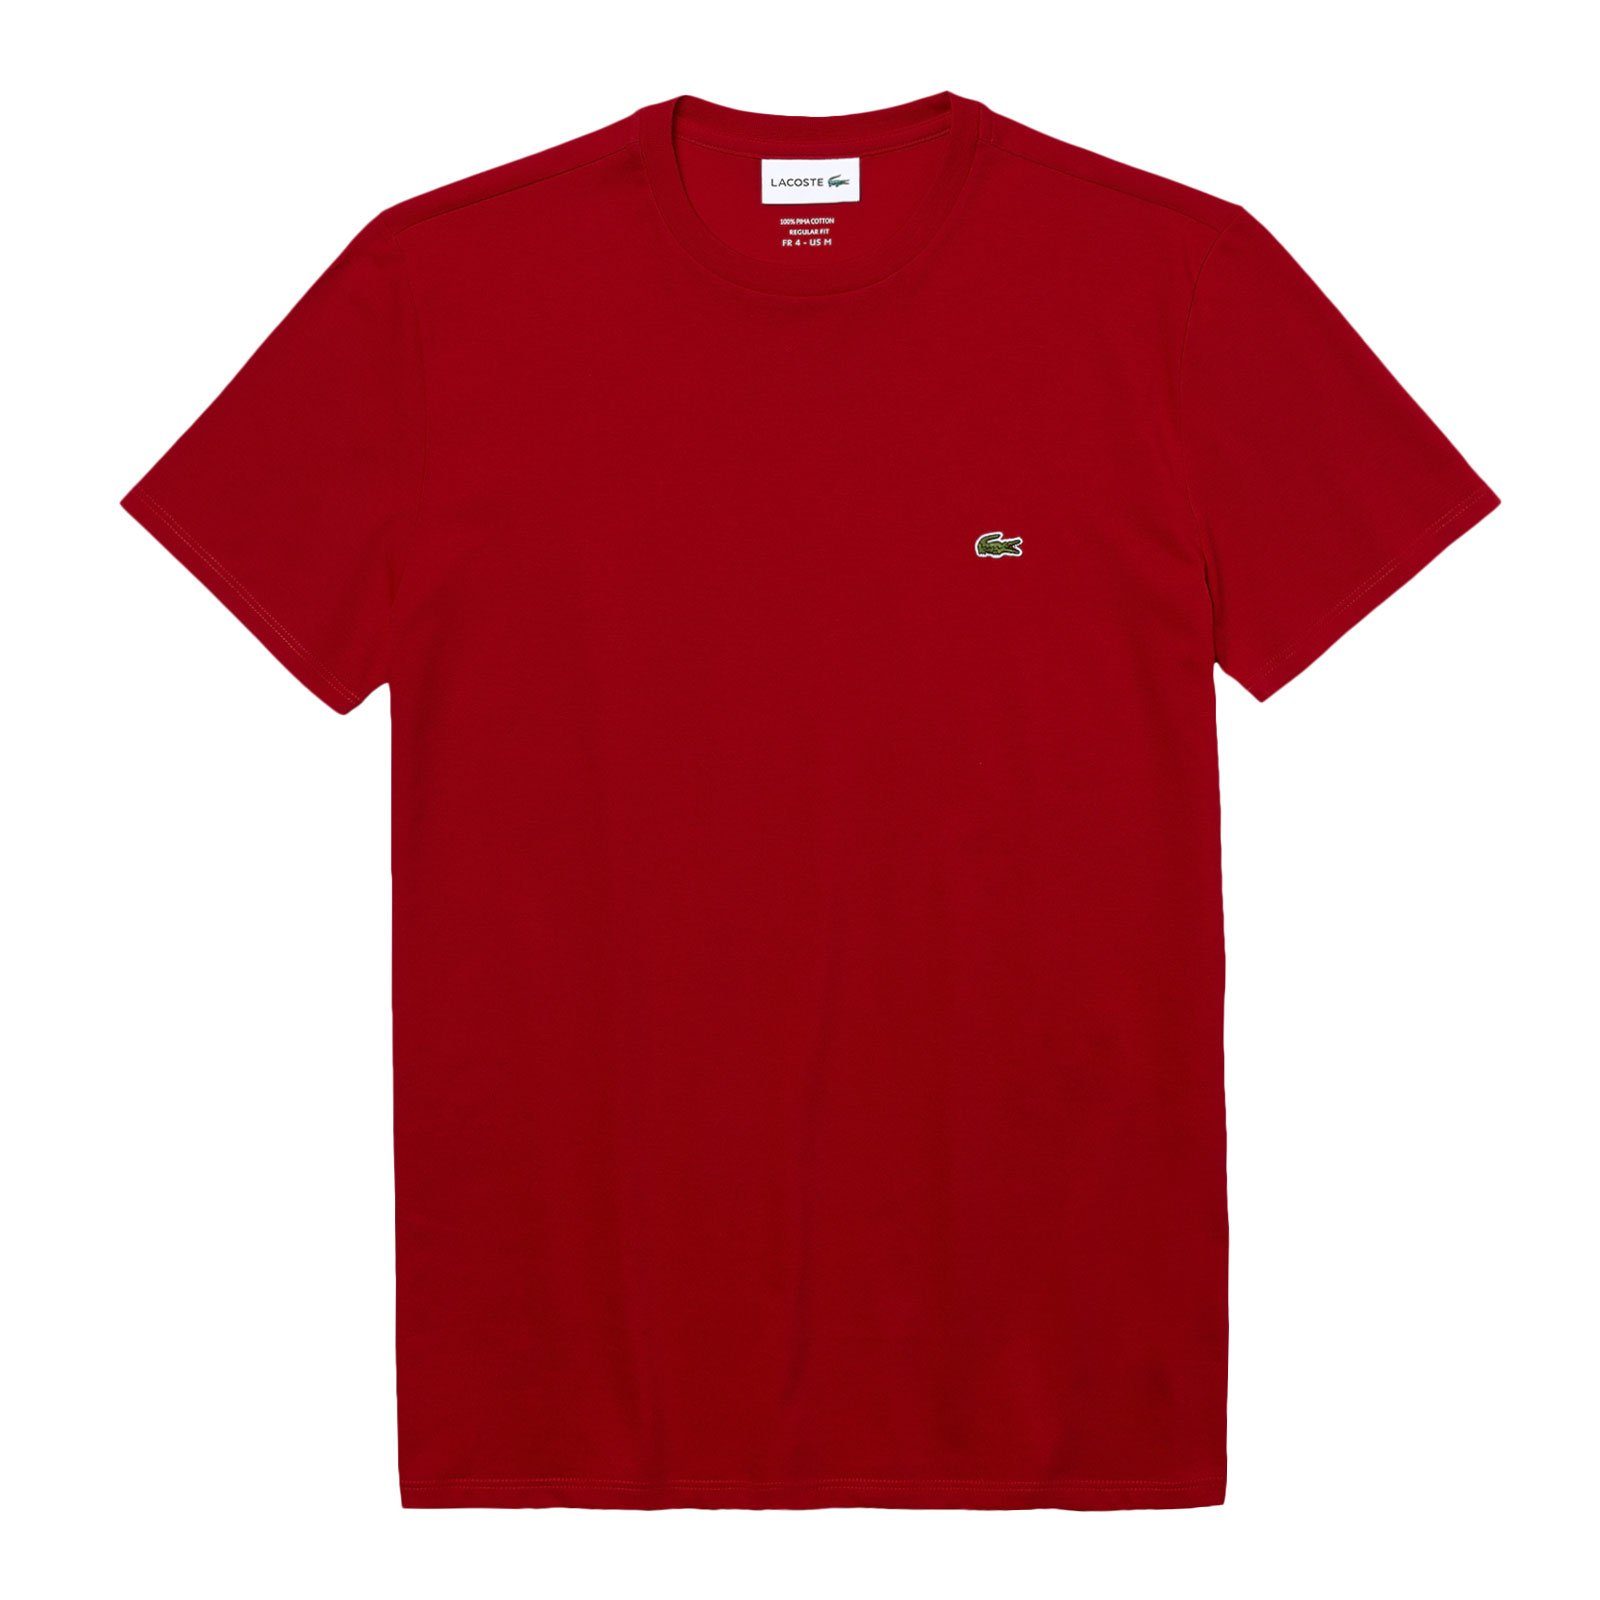 Lacoste T-Shirt Crew Neck mit dark auf kleinem Brust Krokodil Cotton der red 240